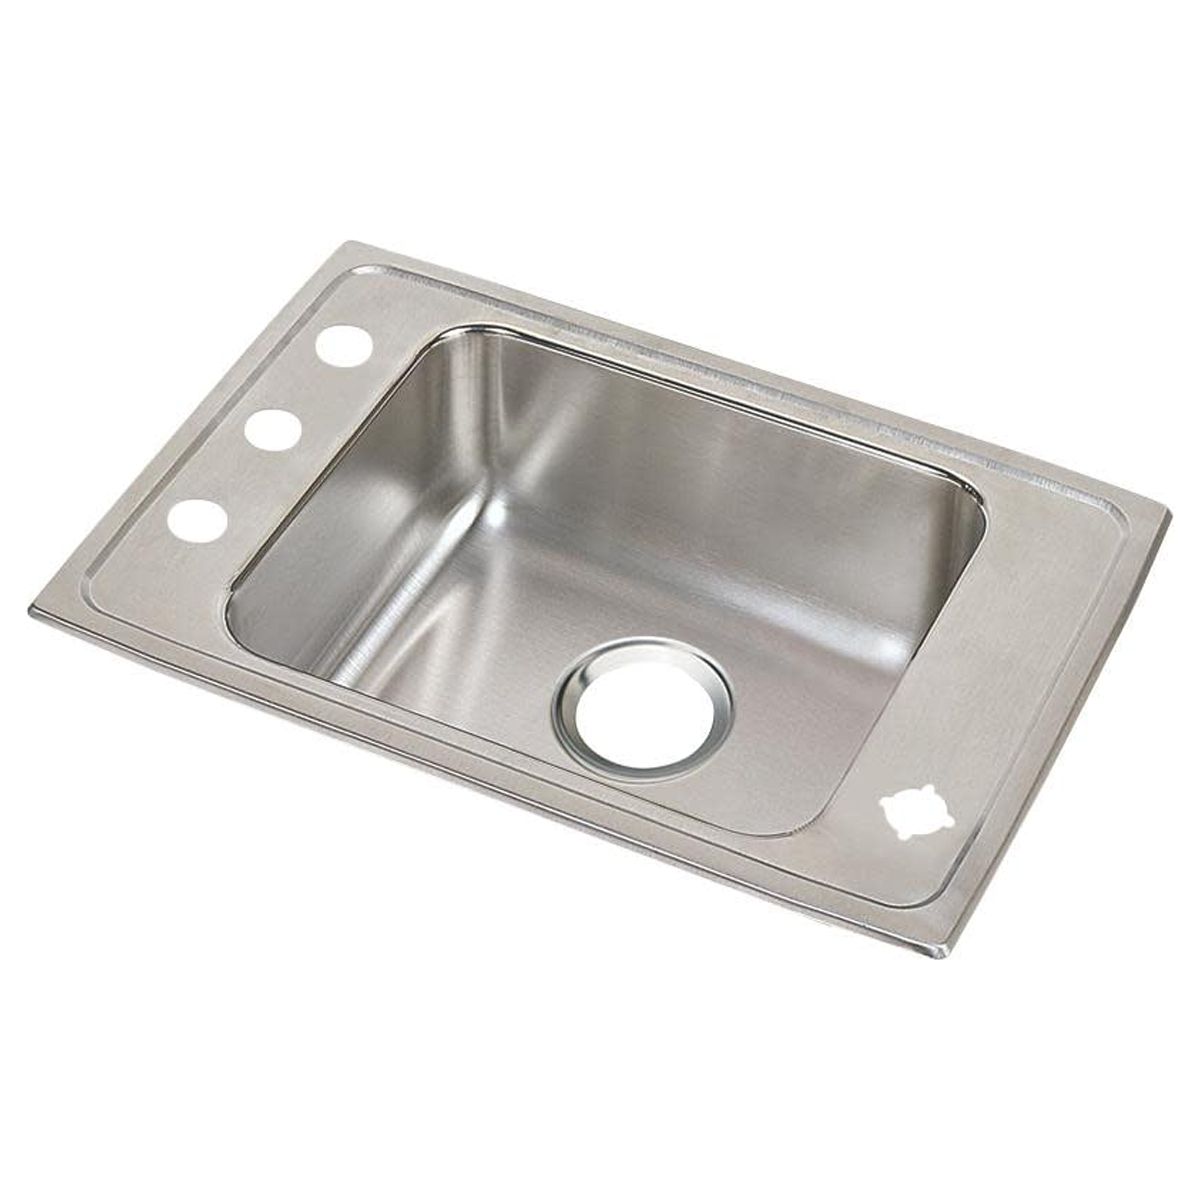 Elkay Drkr2517 Lustertone 25" Drop In Single Basin Stainless Steel Utility Sink - 4 Faucet - image 1 of 7